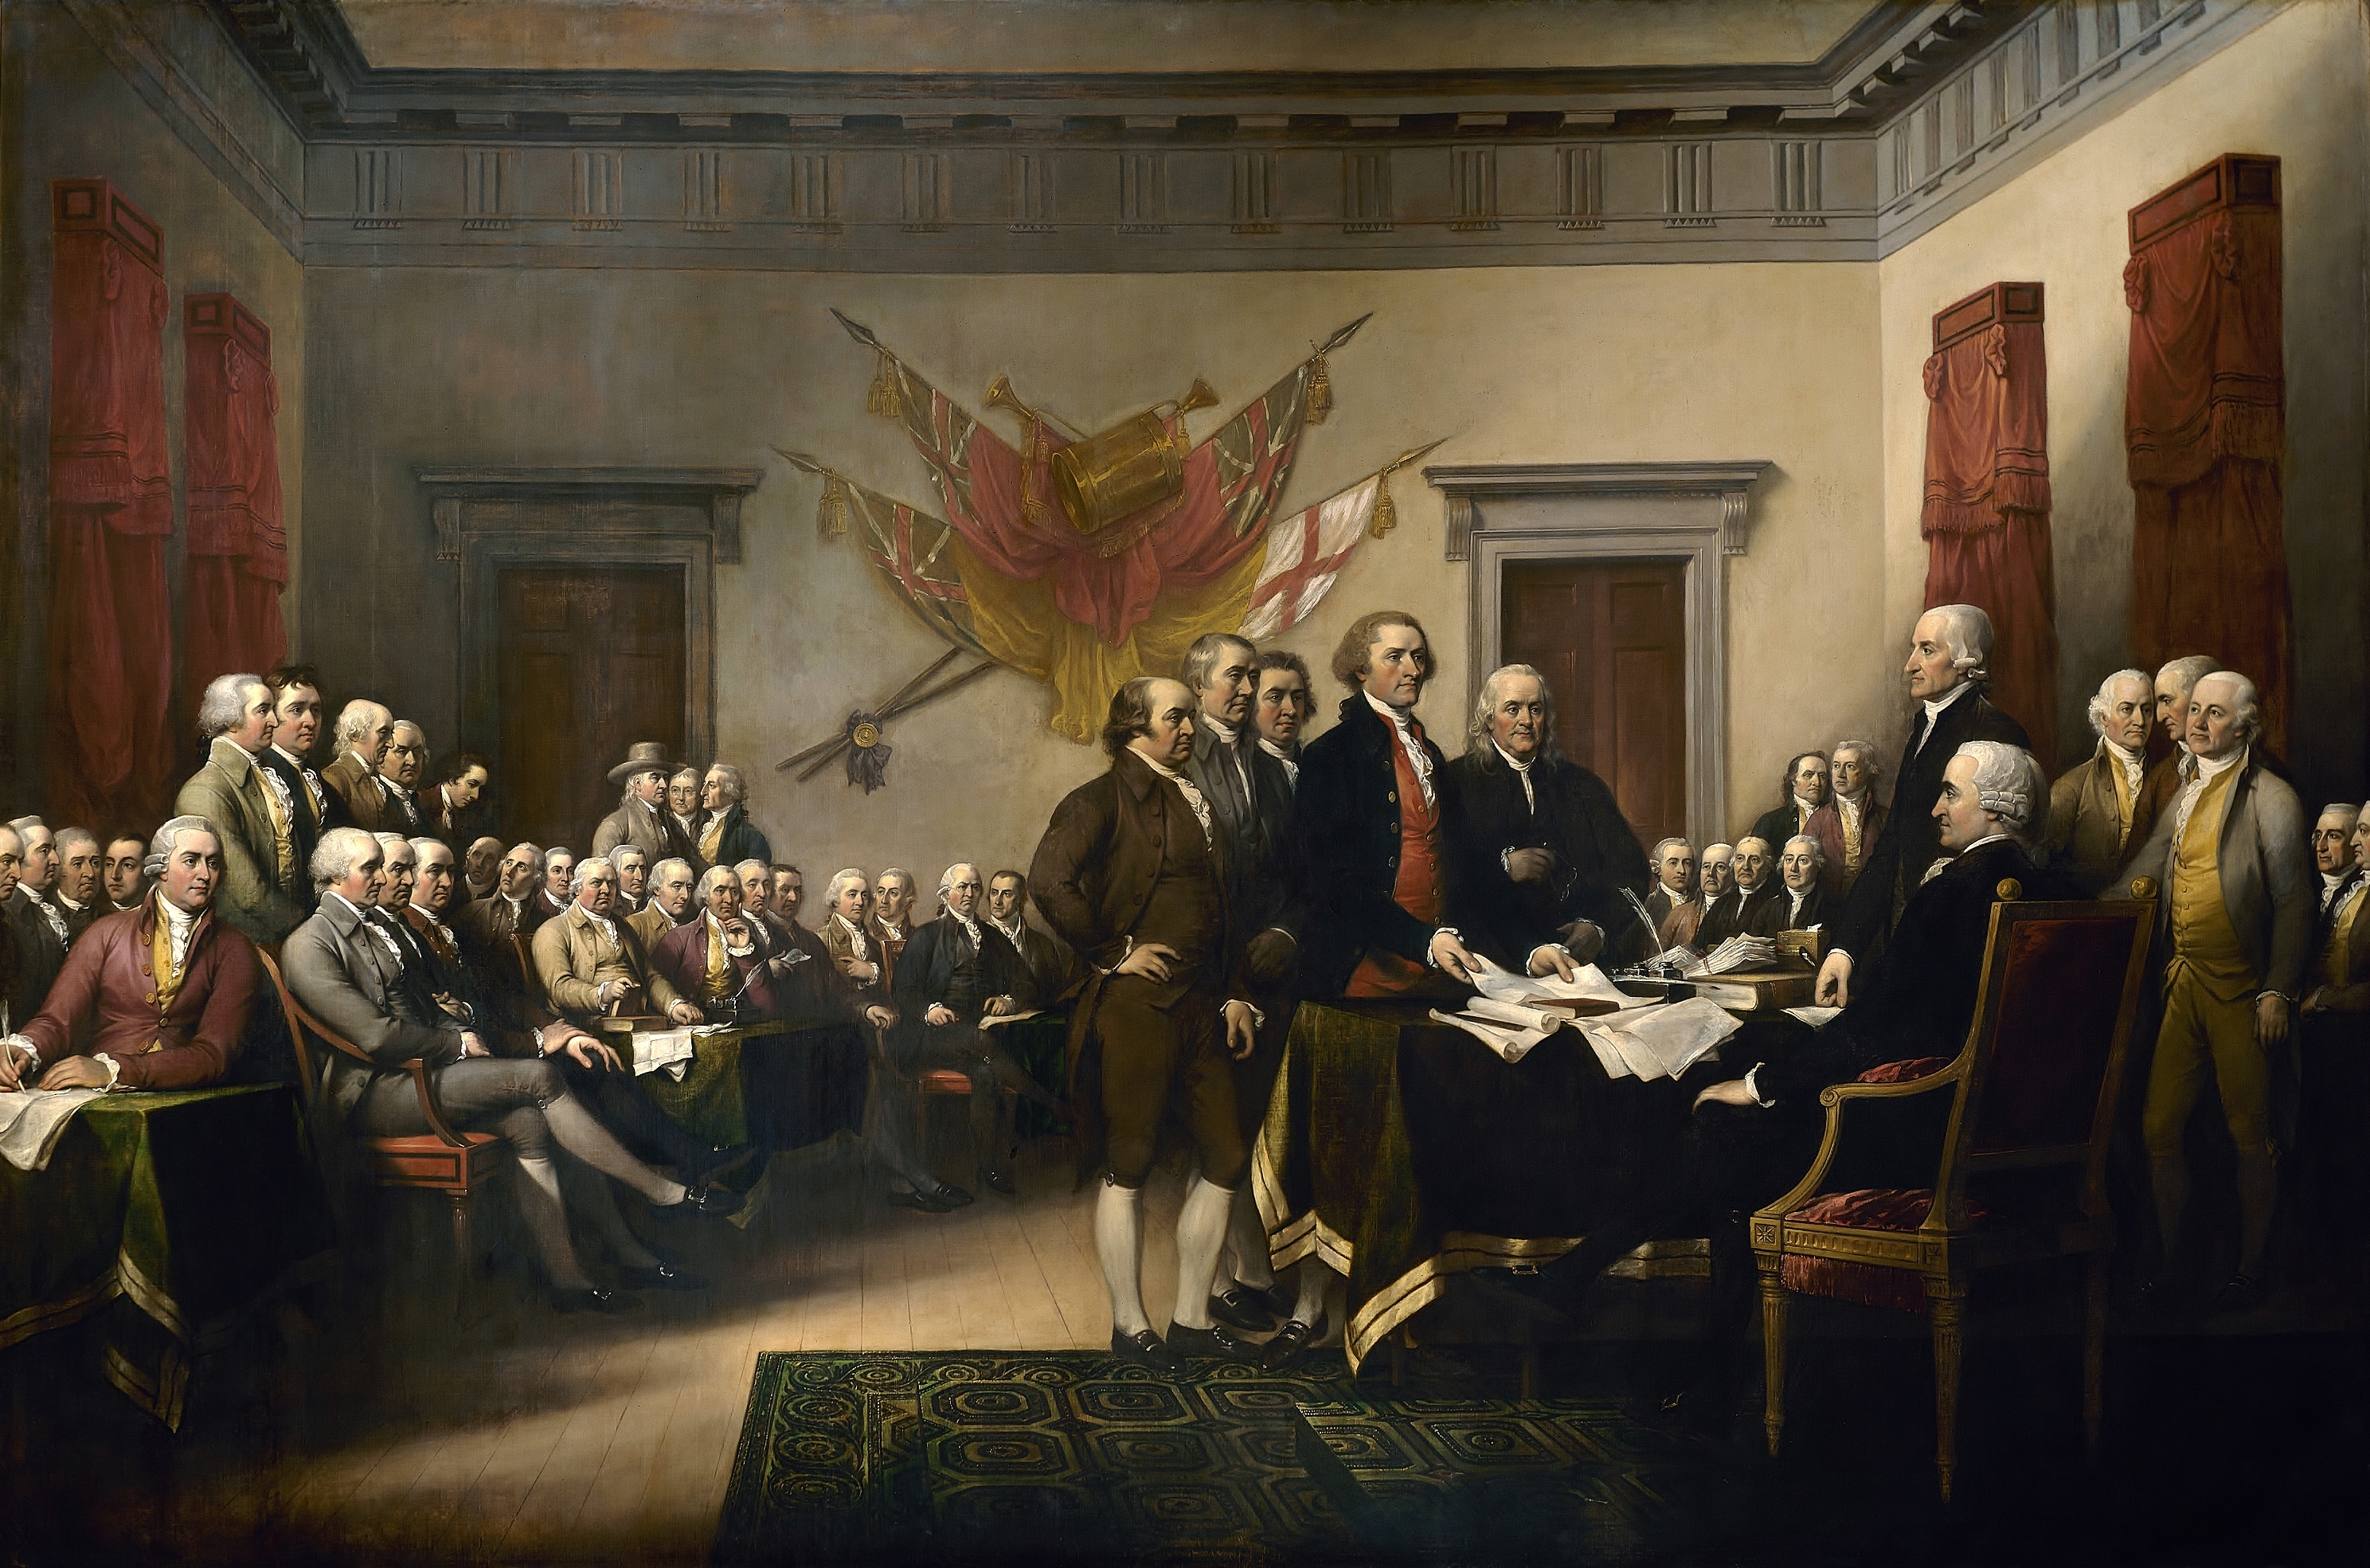 Deklaracja Niepodległości by John Trumbull - 1818 - 3.7 m × 5.5 m 